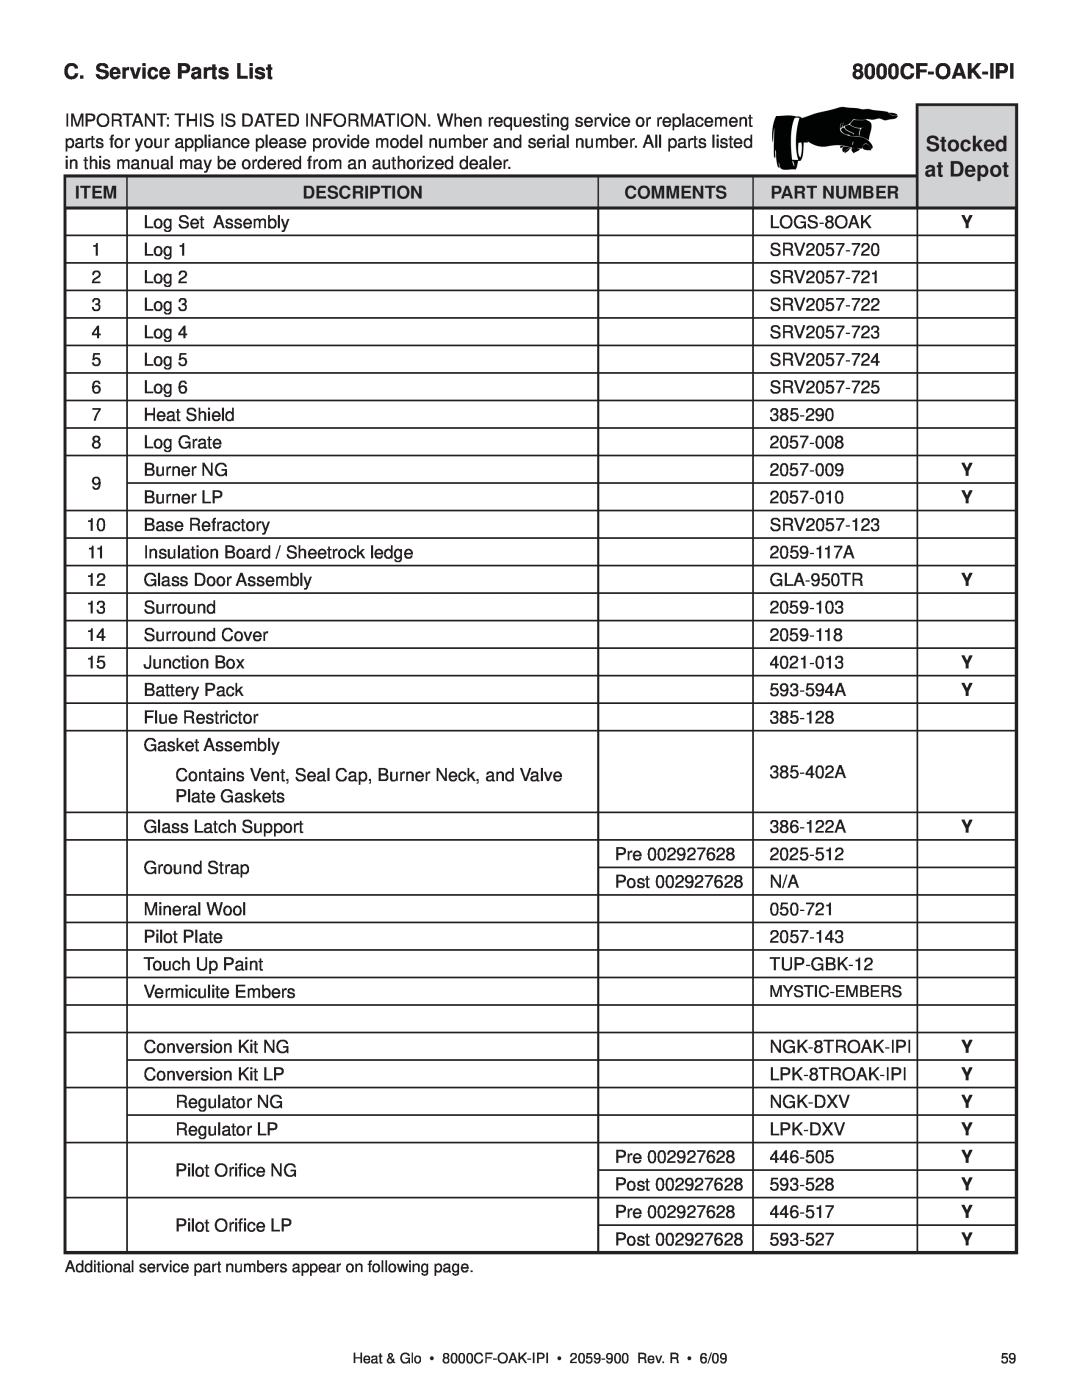 Heat & Glo LifeStyle 8000CF-OAK-IPI C. Service Parts List, Stocked, at Depot, Item, Description, Comments, Part Number 